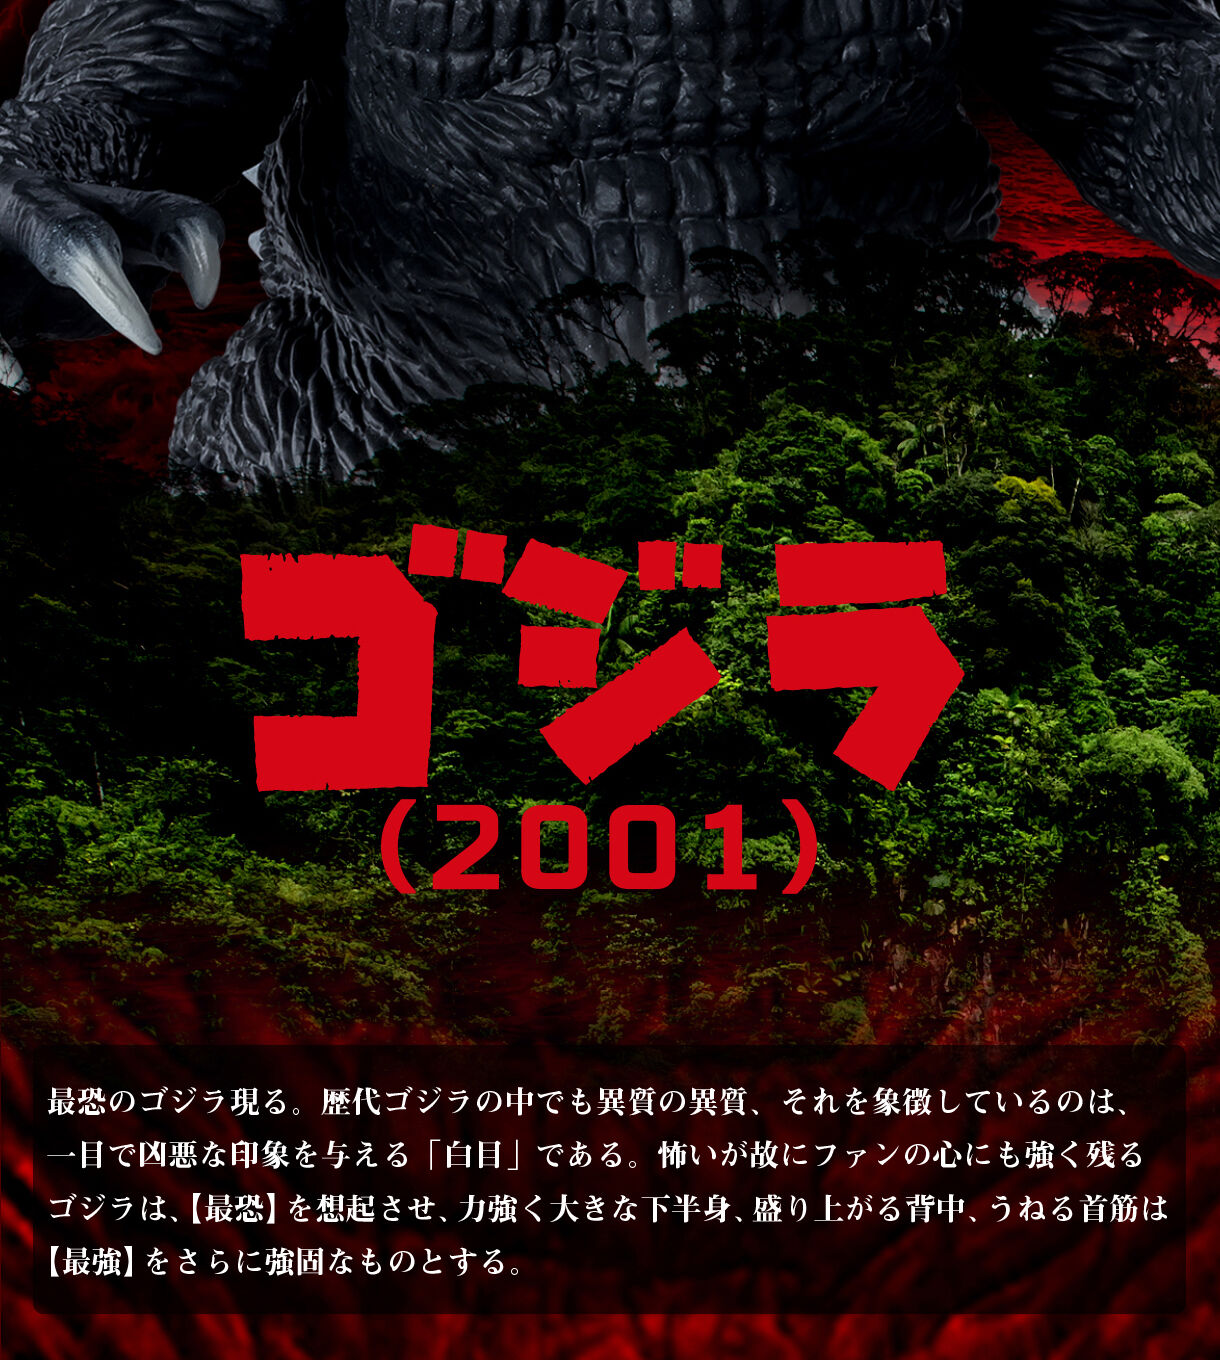 怪獣番外地 ゴジハムくん  ゴジラ(2001) | ゴジラシリーズ 趣味・コレクション | バンダイナムコグループ公式通販サイト